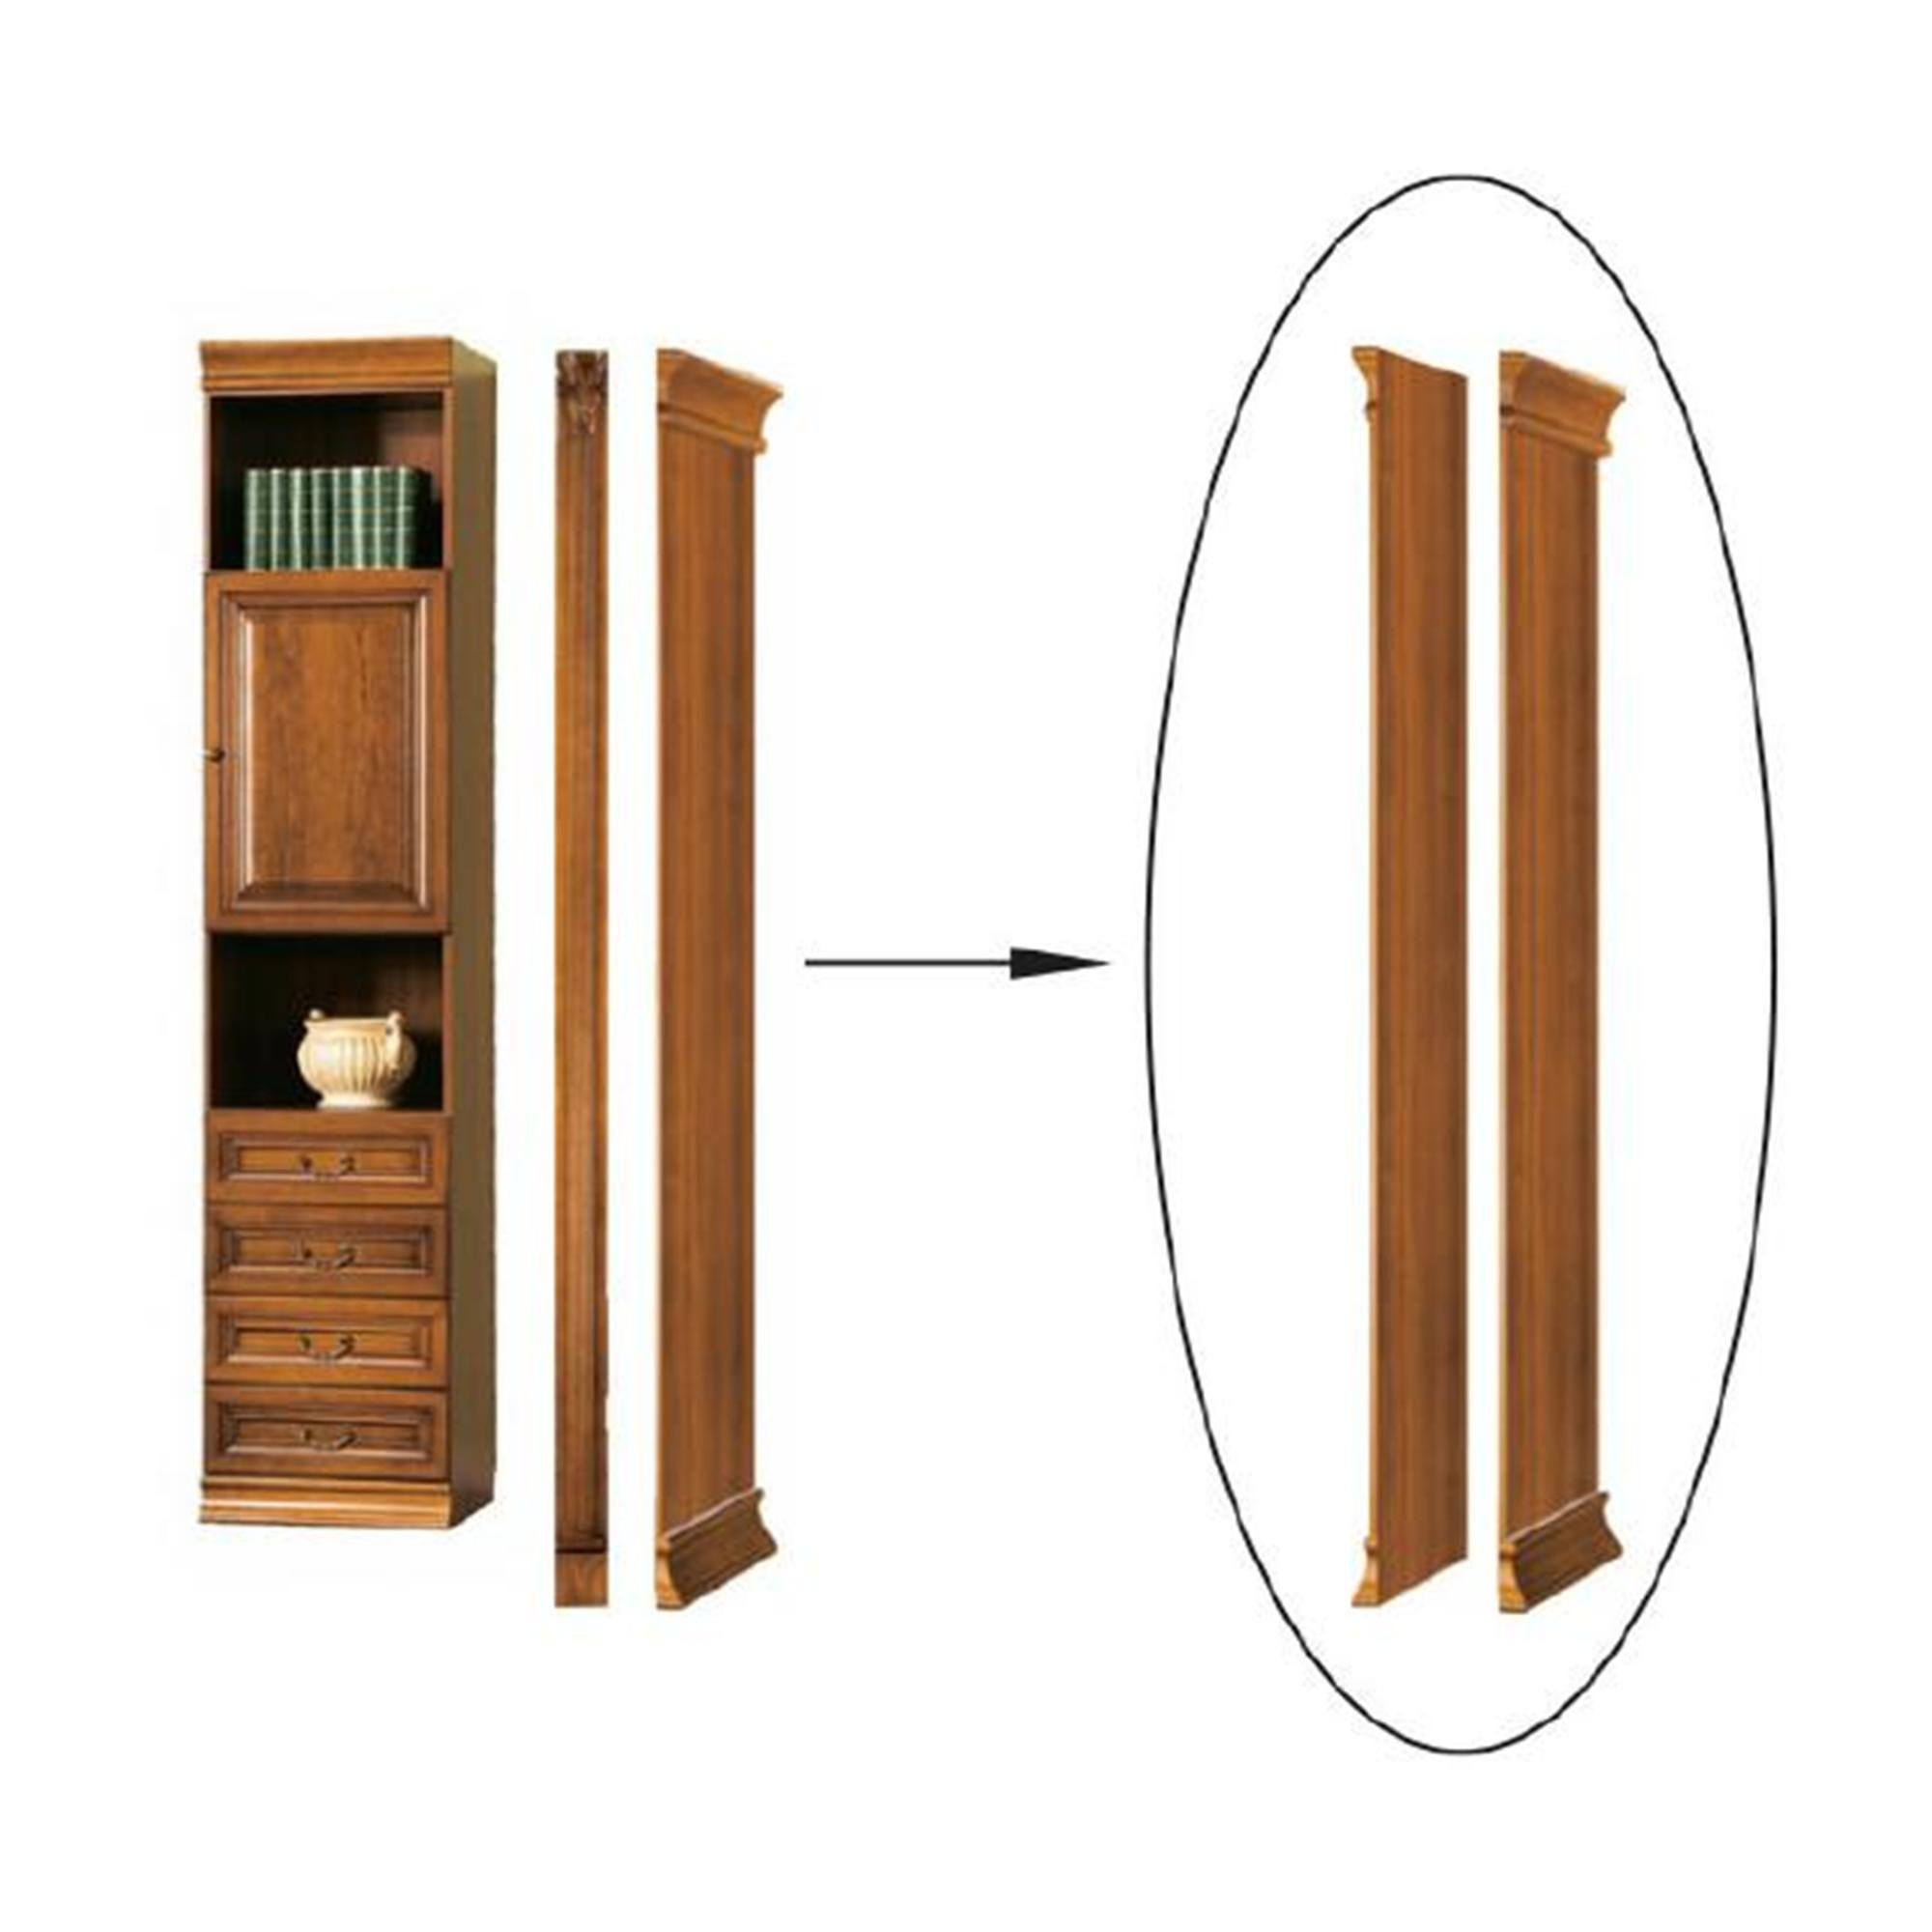 Model Bücherschrank Abschlußelement Bücherregal für Bücherturm, Klassisches SE-B2 JVmoebel Schrank -